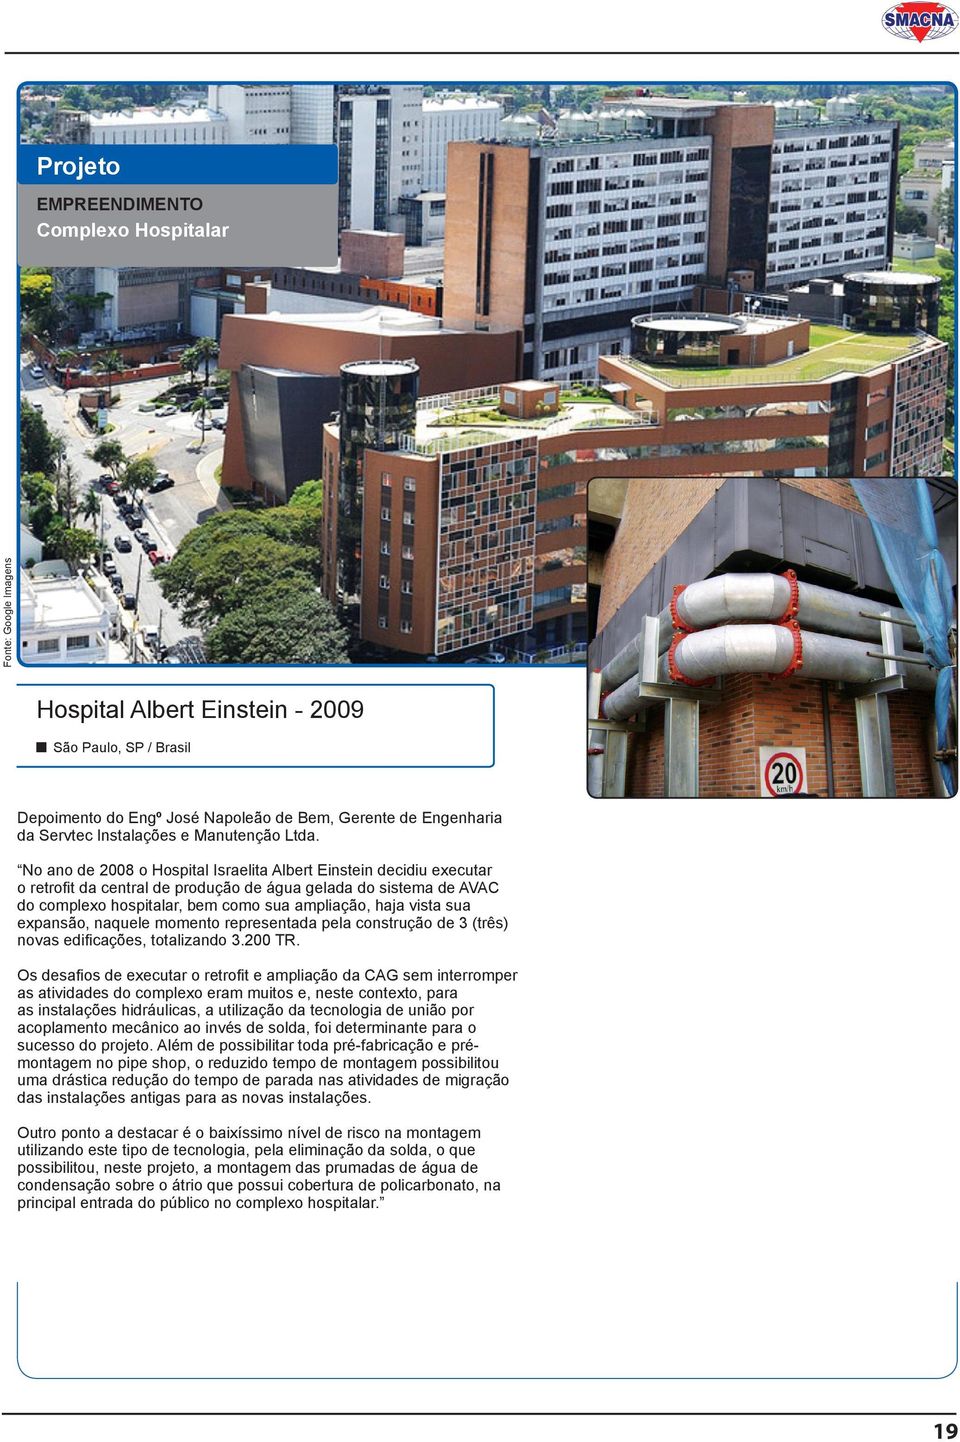 No ano de 2008 o Hospital Israelita Albert Einstein decidiu executar o retrofit da central de produção de água gelada do sistema de AVAC do complexo hospitalar, bem como sua ampliação, haja vista sua